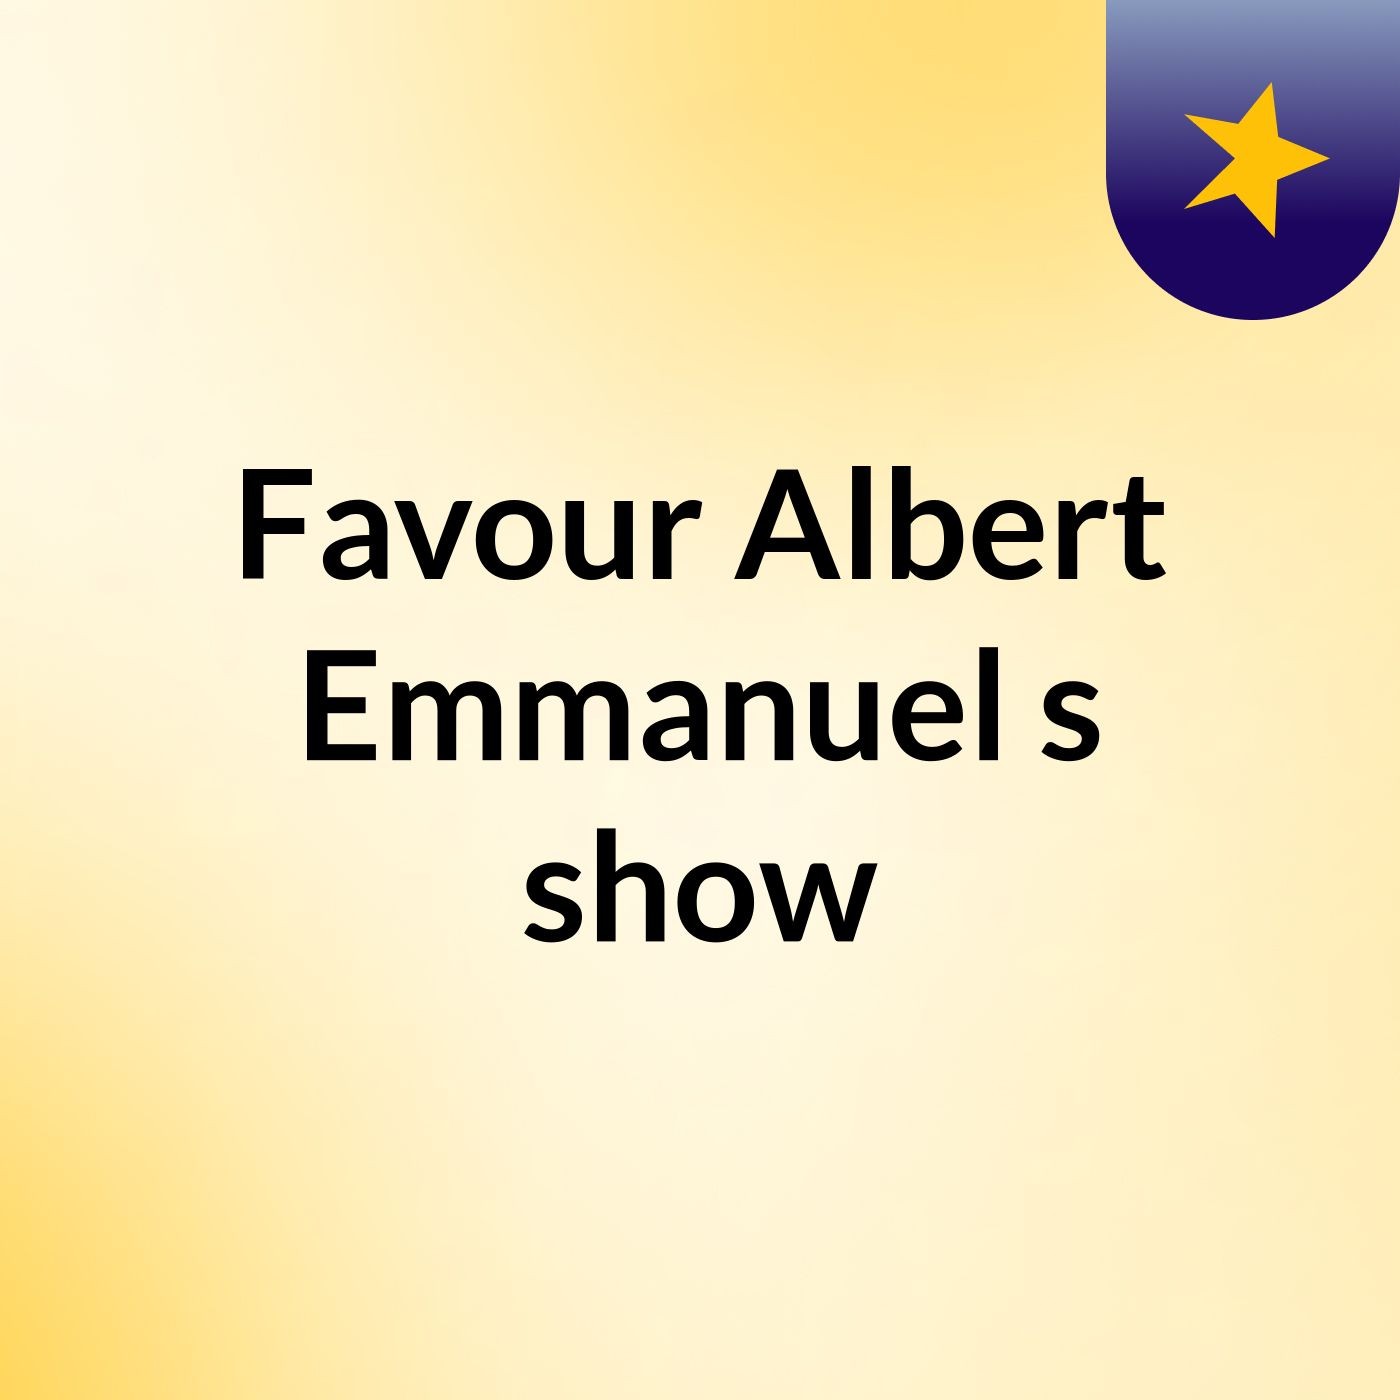 Favour Albert Emmanuel's show